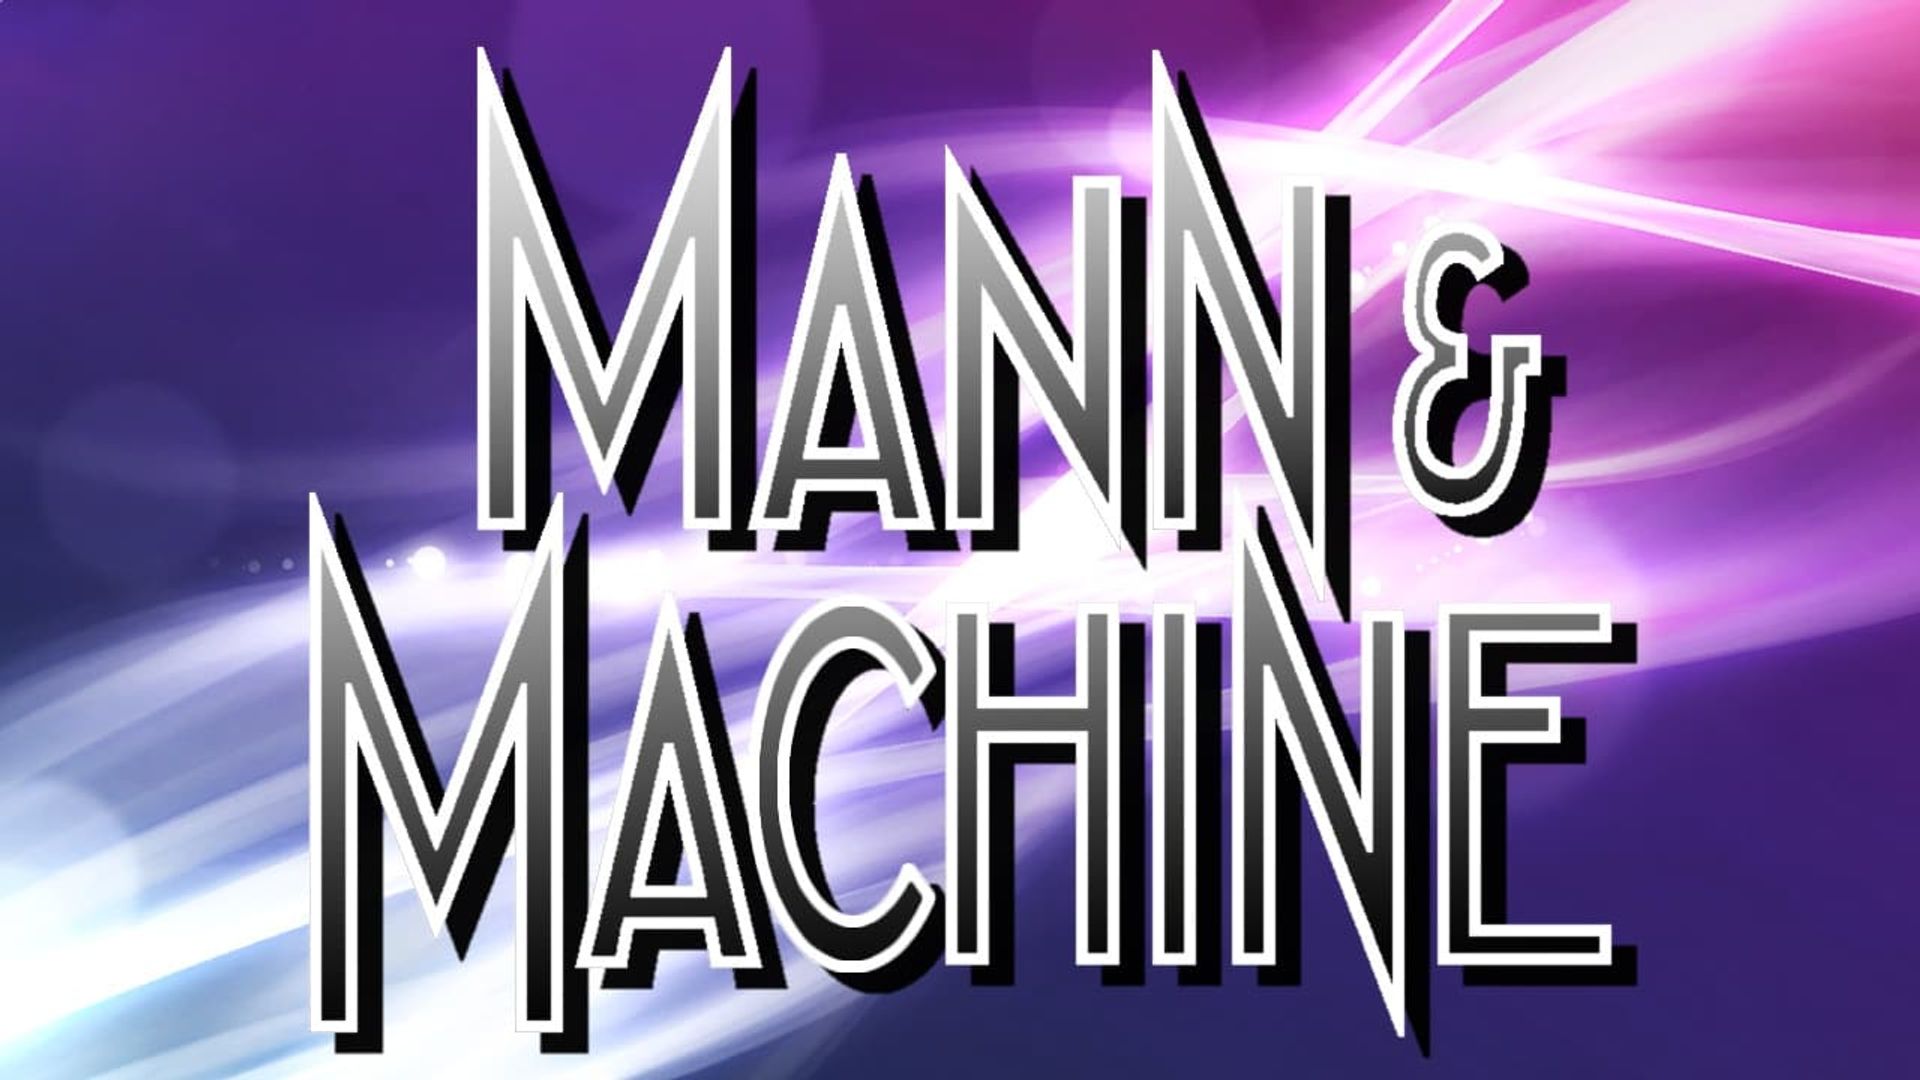 Mann & Machine background